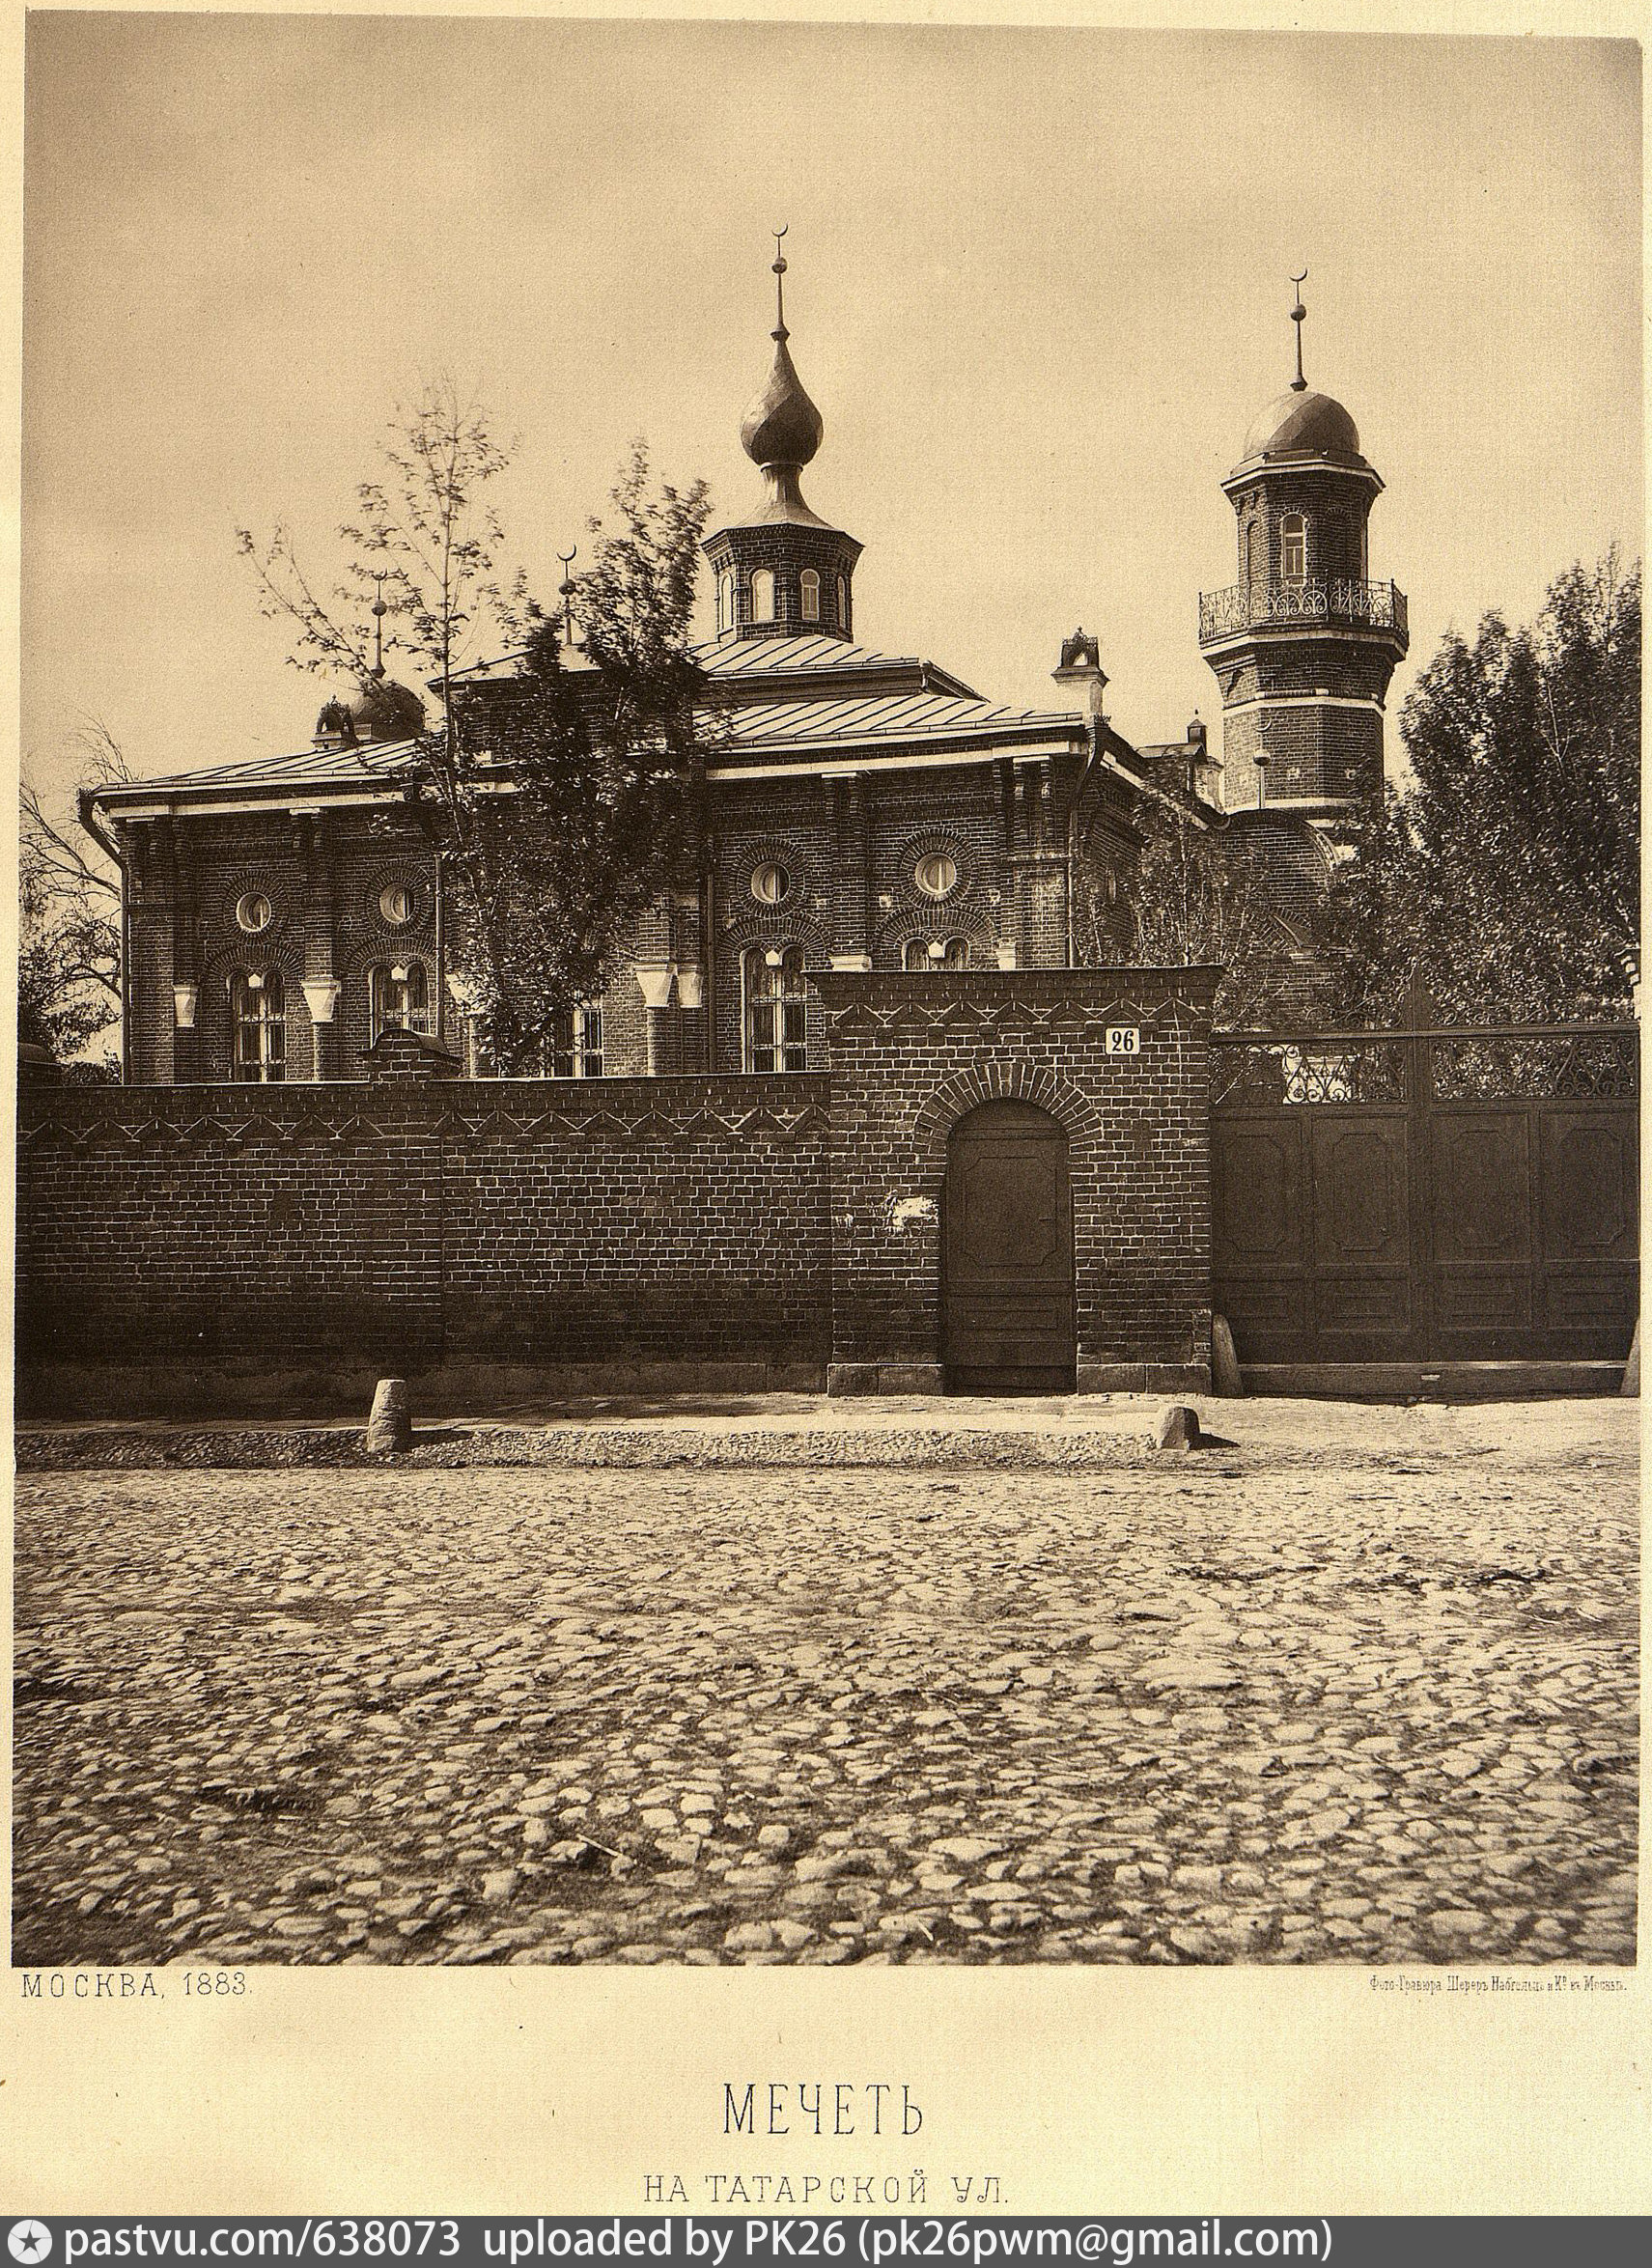 Фото 1883 г. В 1939 г. мечеть была закрыта, в ней размещался военный комиссариат. После Великой Отечественной войны верующие пытались добиться возвращения здания, но мечеть передали мусульманской общине лишь в 1992 г.